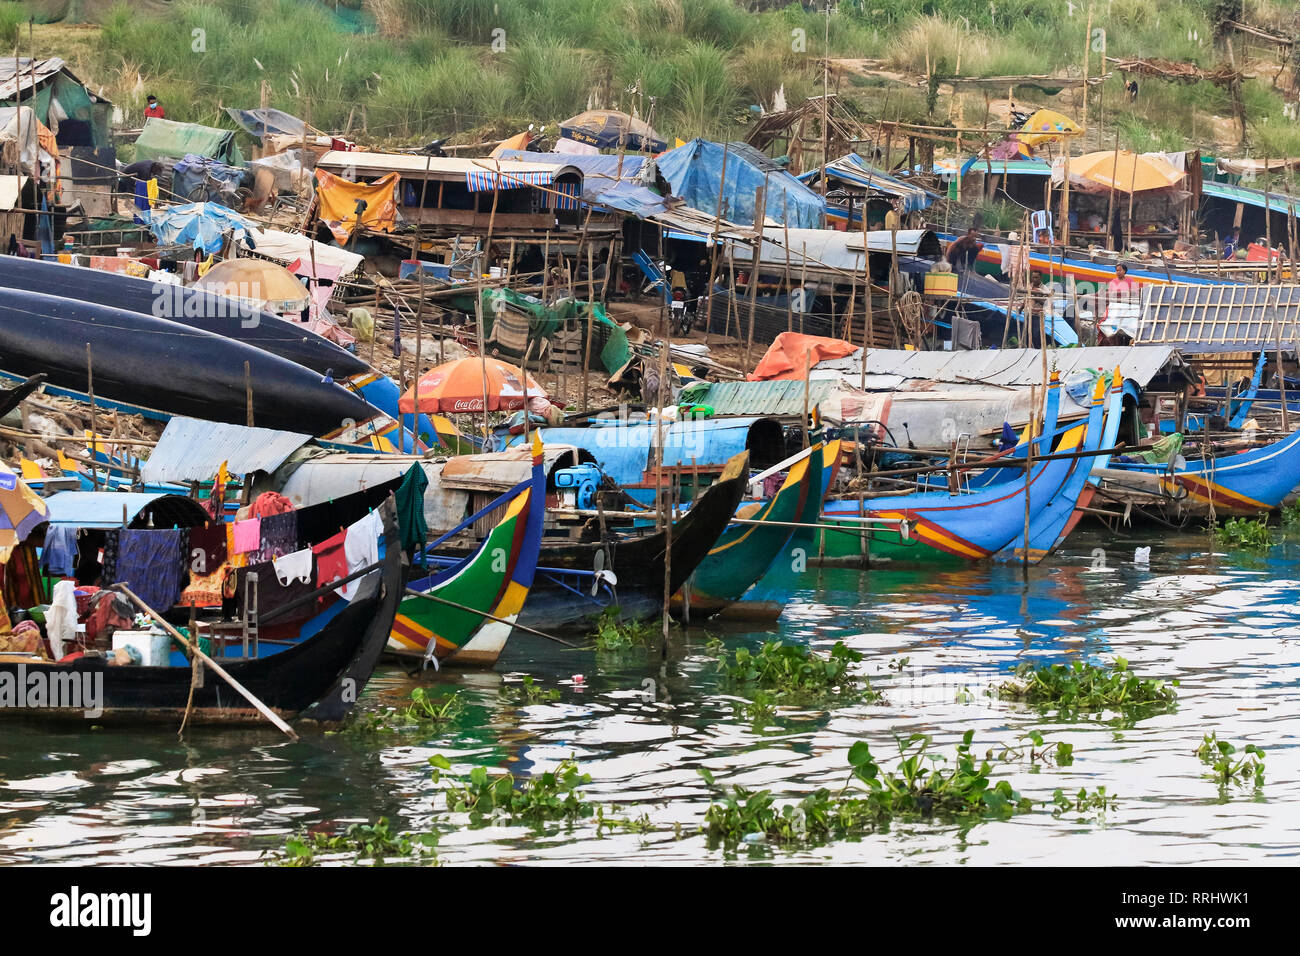 Muslimischen Cham angeln Leute, die auf ihren Booten leben, schwindende Fischbestände haben Armut verursacht, Fluss Mekong, Phnom Penh, Kambodscha, Indochina Stockfoto